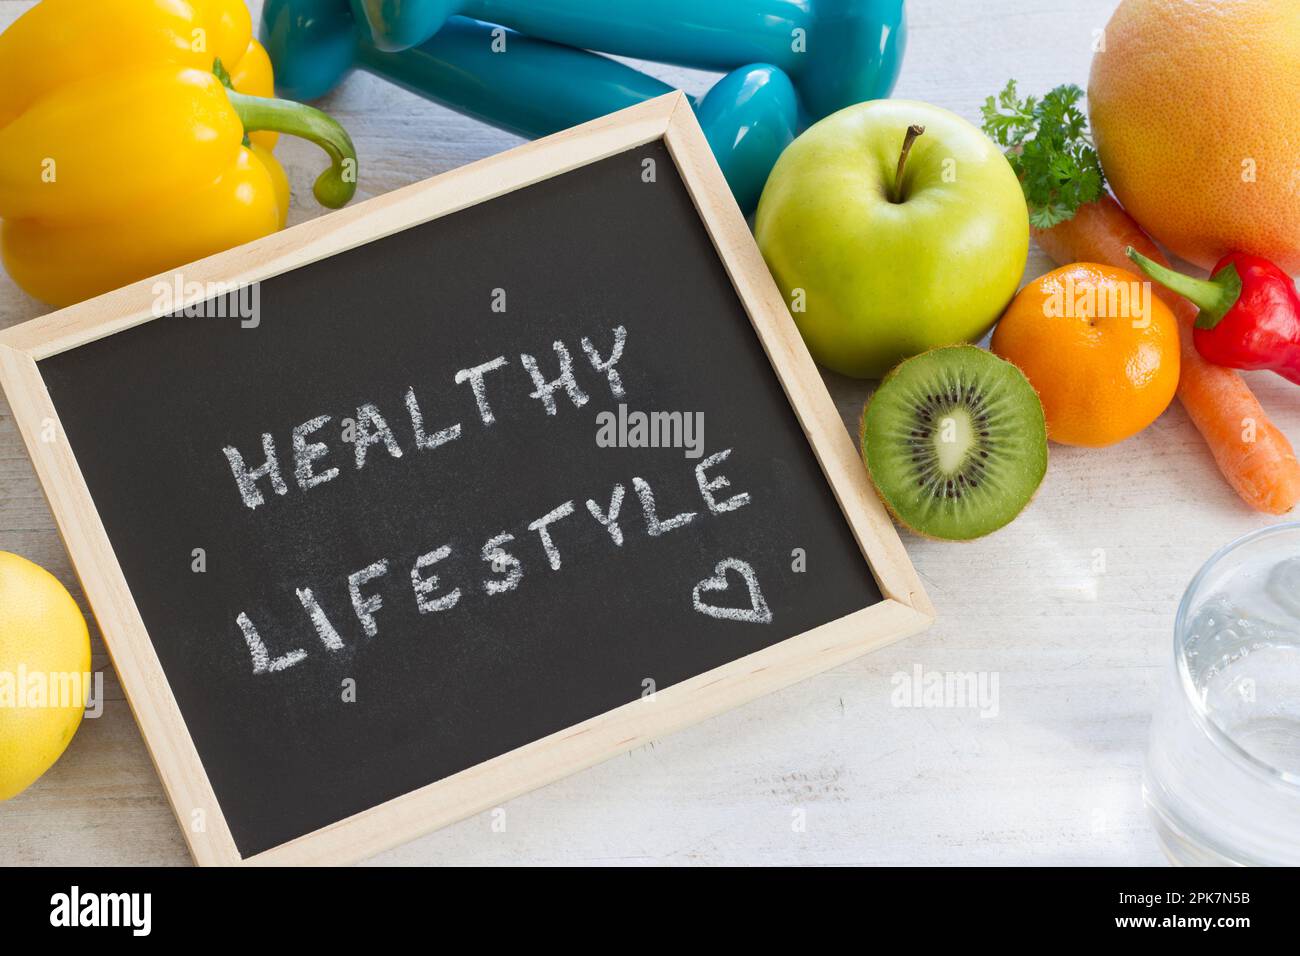 Parole "stile di vita sano" sulla lavagna. Frutta, verdura e manubri, dieta sana e concetto di sport Foto Stock